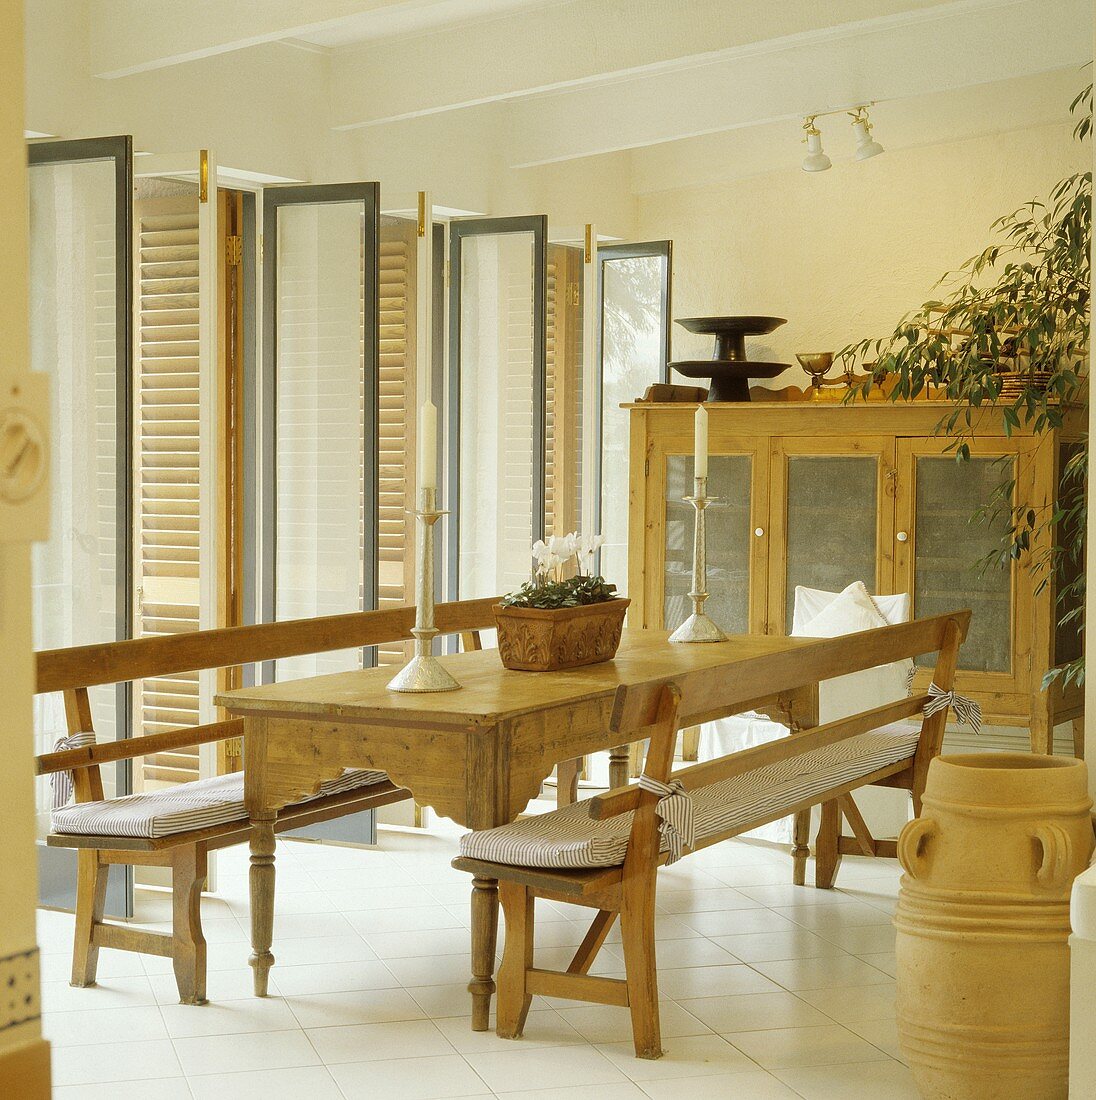 Rechteckiger Tisch und Bänke aus Kiefernholz in einem modernen weissen Esszimmer mit offenen Glastüren und Fensterläden